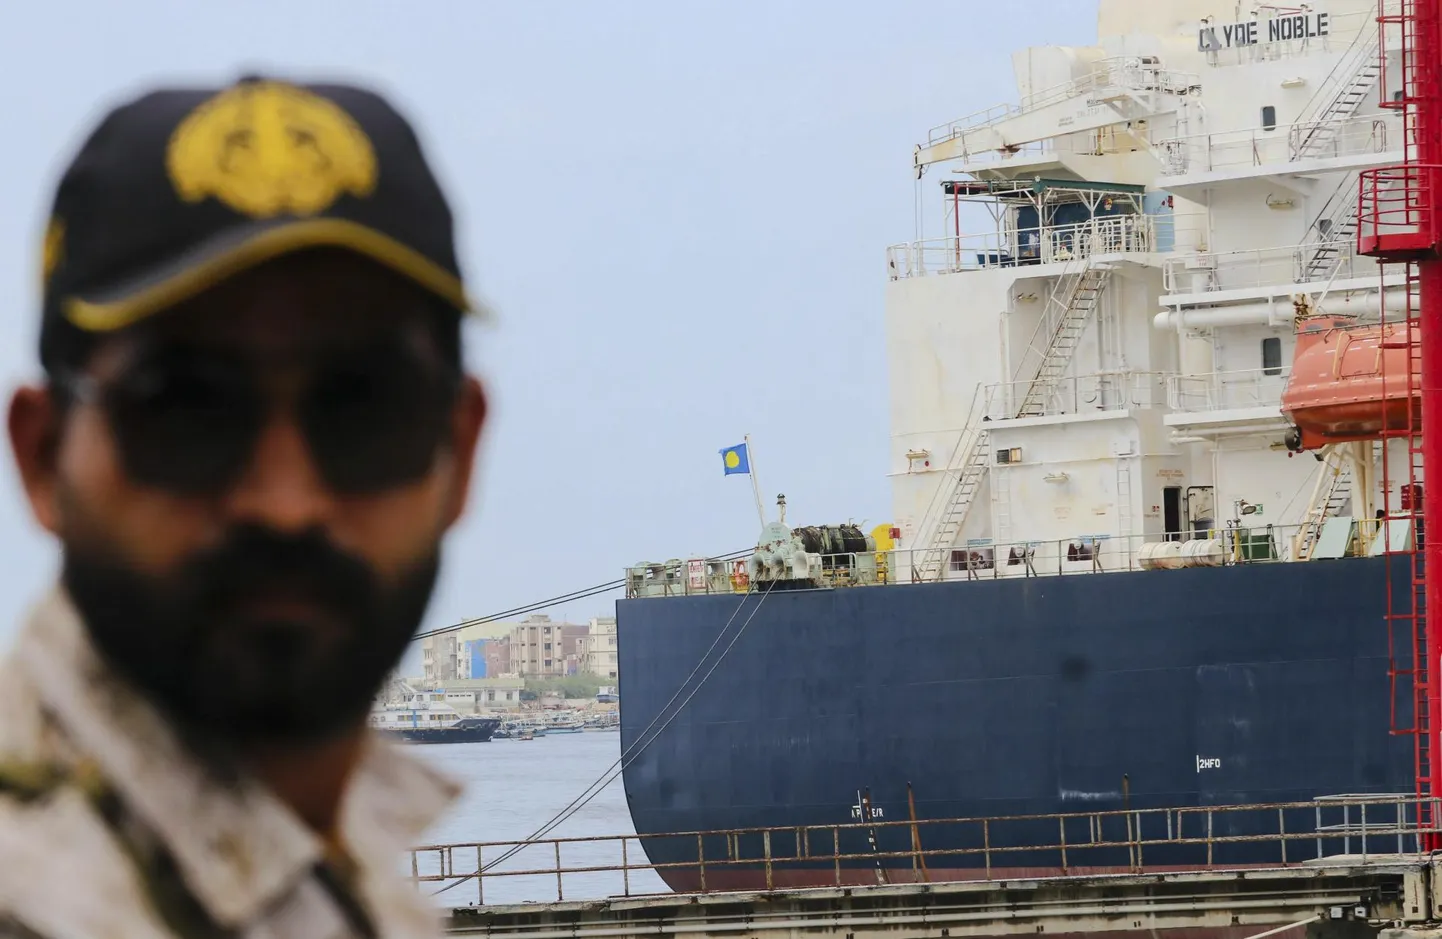 Vene toornafta tanker Clyde Noble kaks kuud tagasi Pakistanis Karachi sadamas.